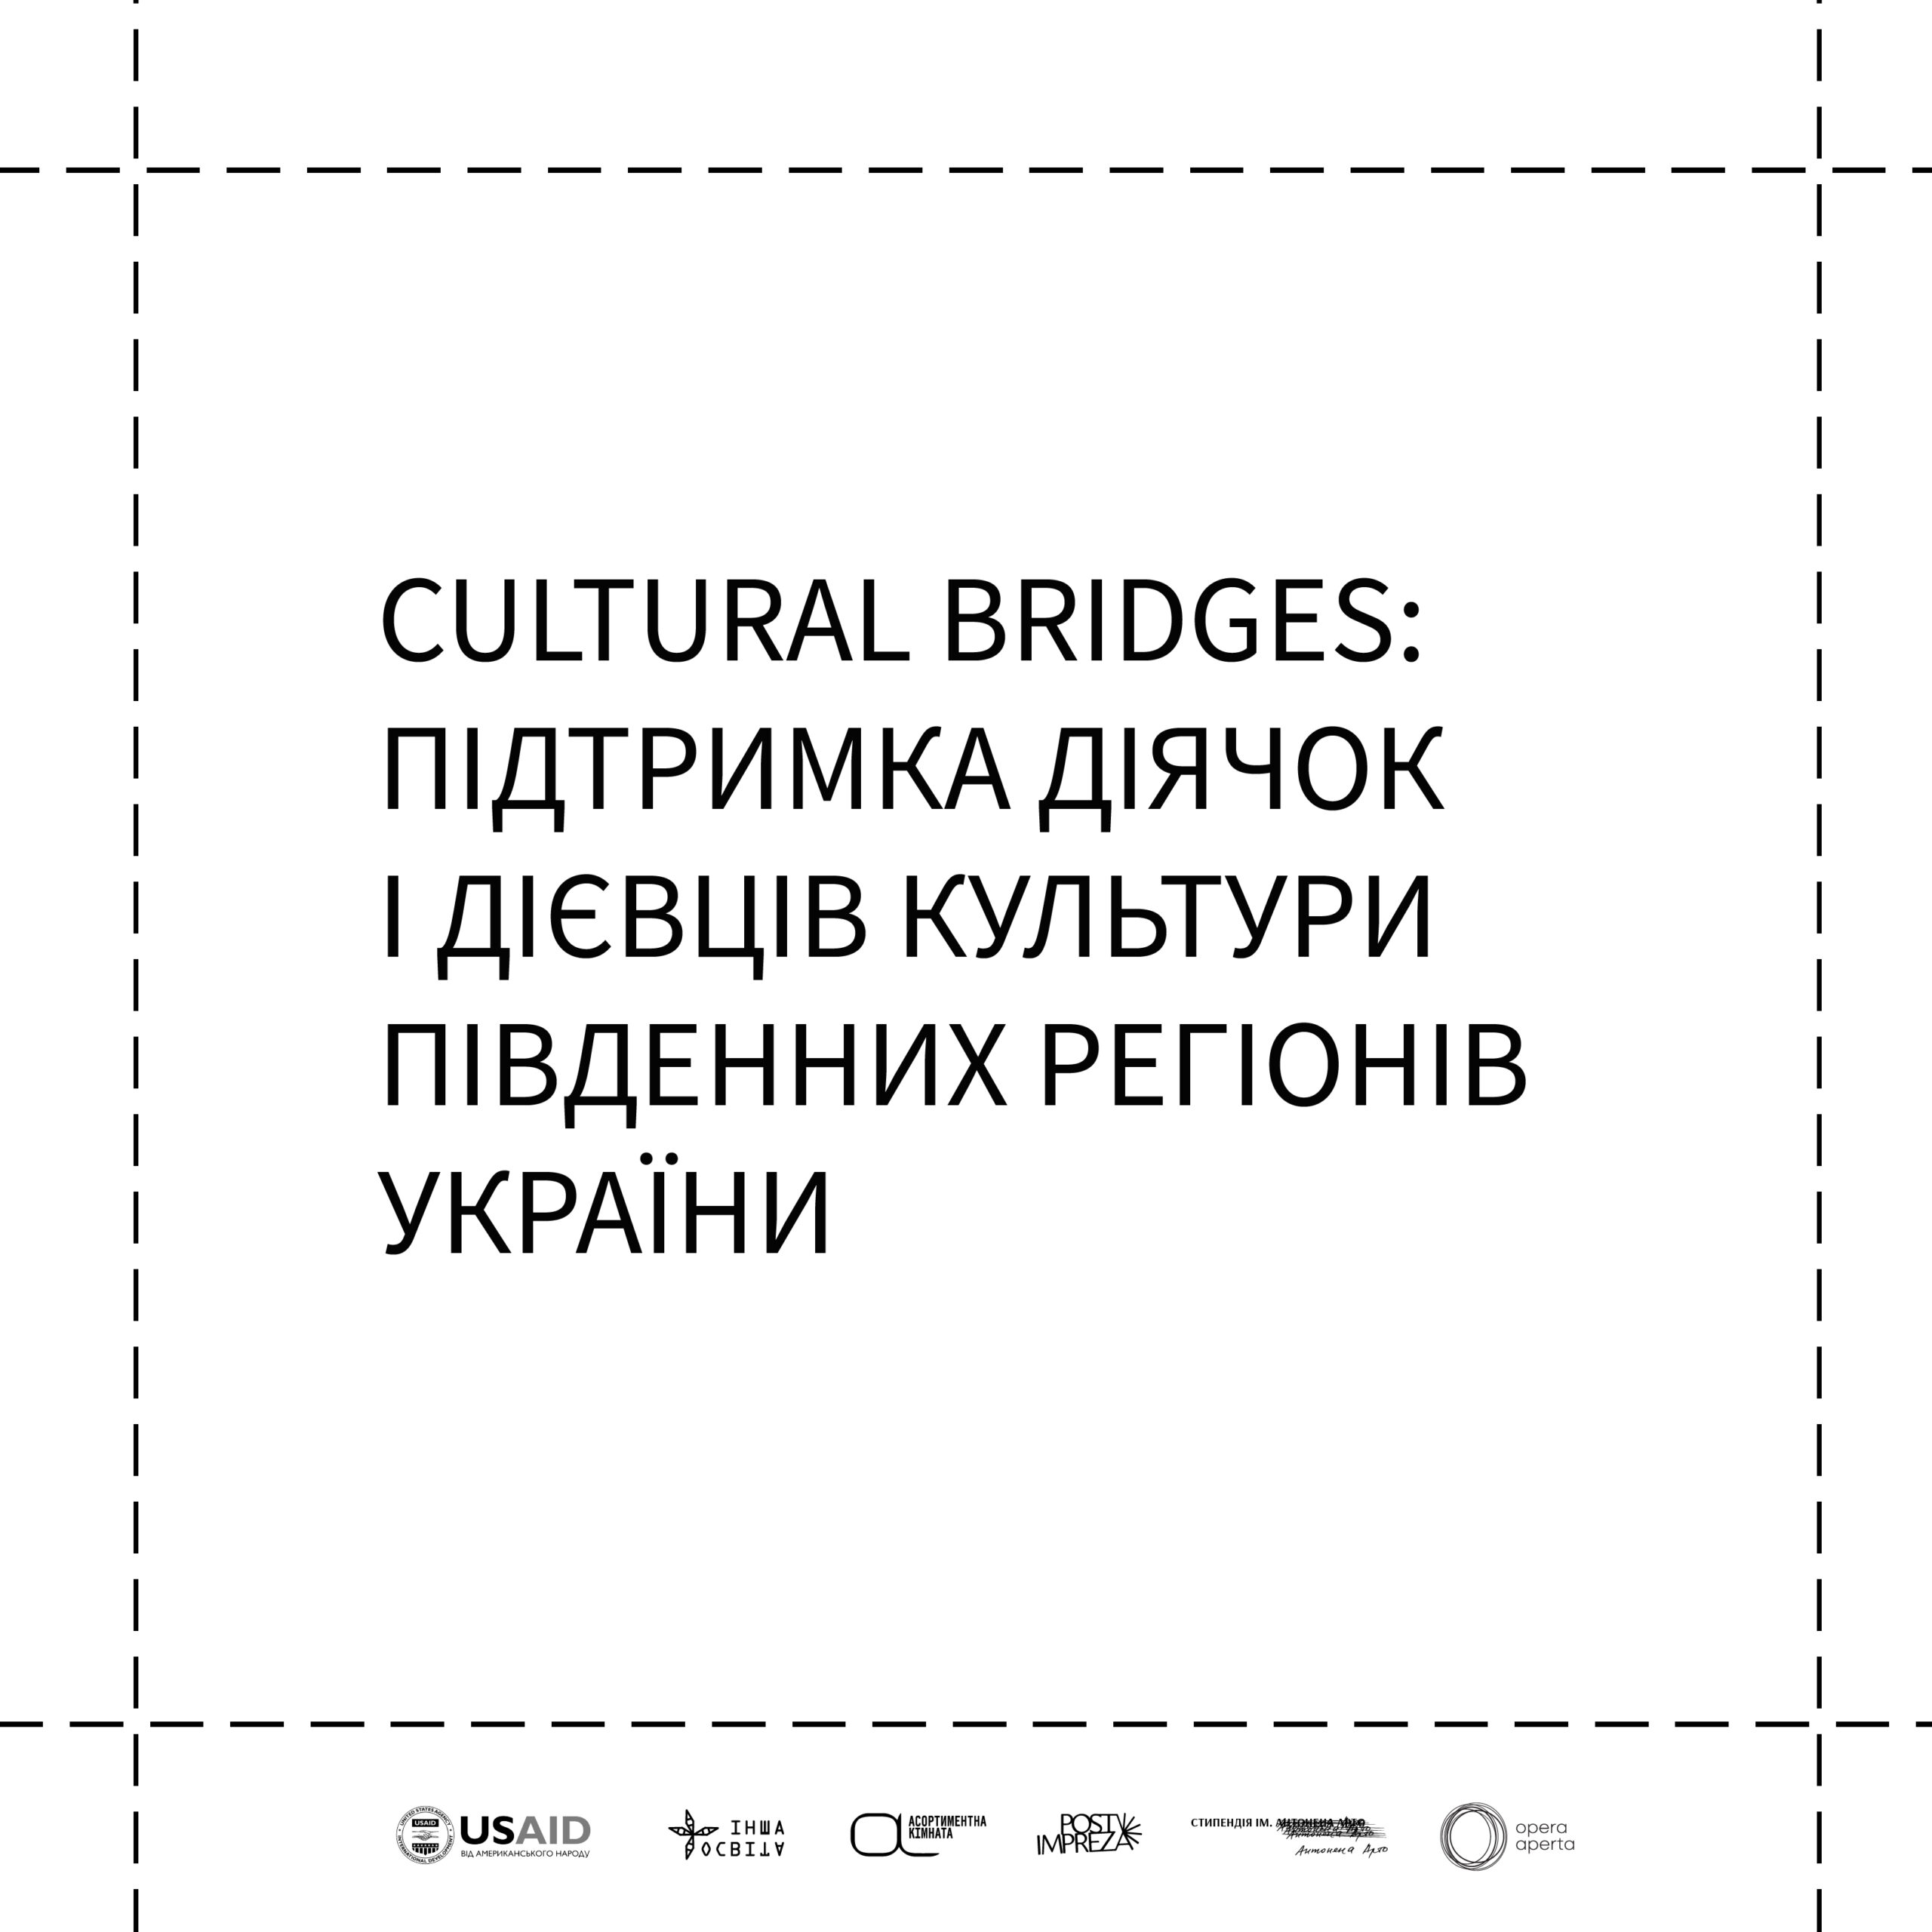 CULTURAL BRIDGES: Підтримка діячок і дієвців культури південних регіонів України